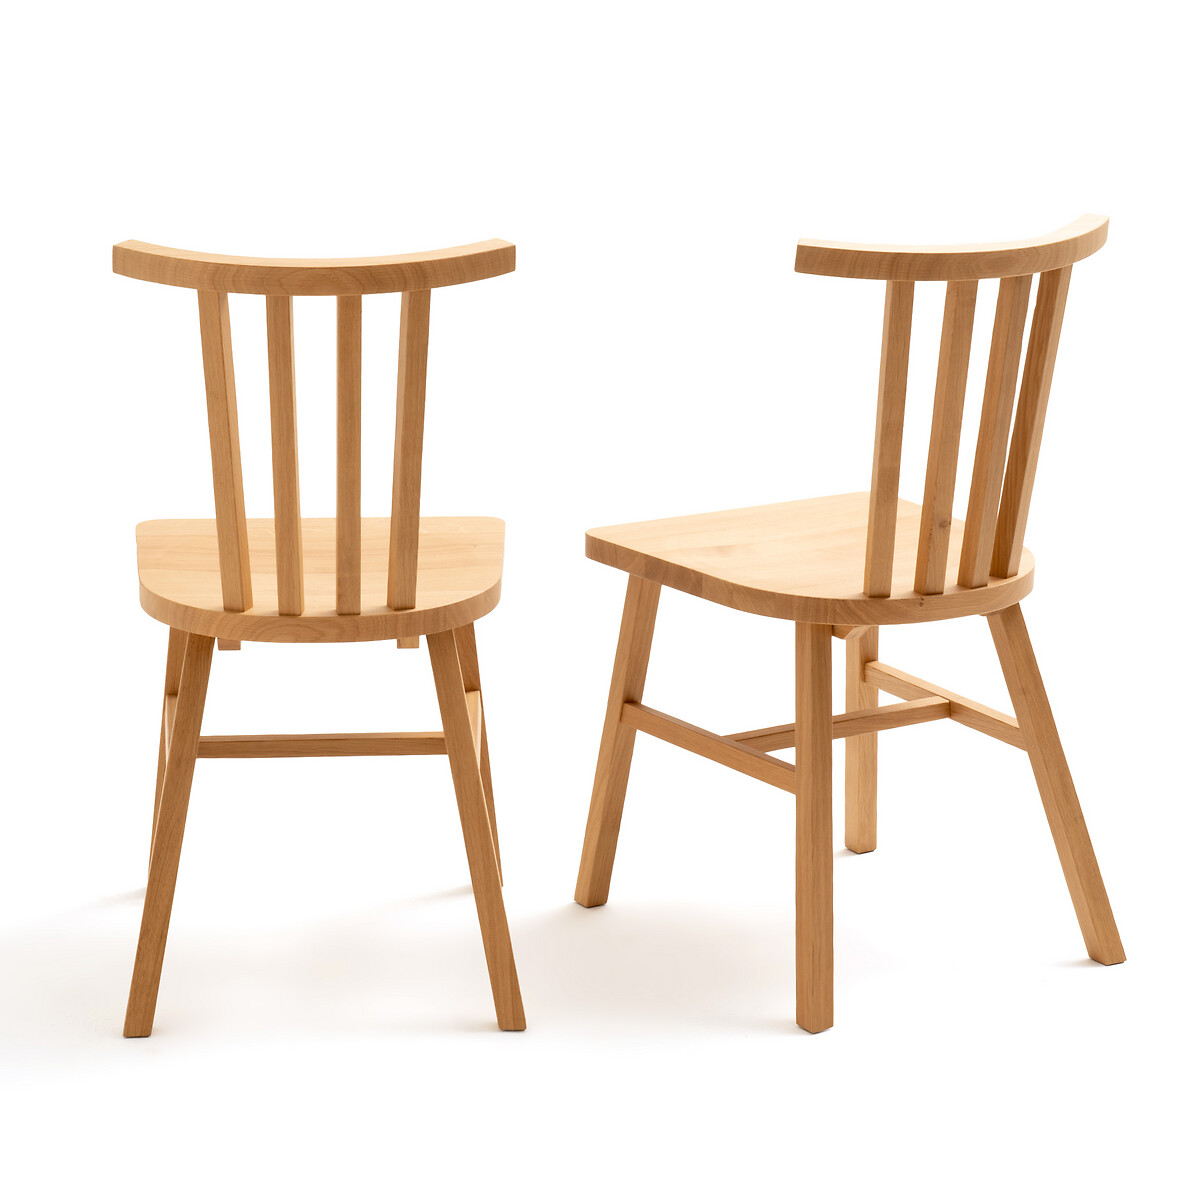 Комплект из 2 стульев с LaRedoute Решетчатой спинкой из массива дуба Ivy единый размер каштановый - фото 3